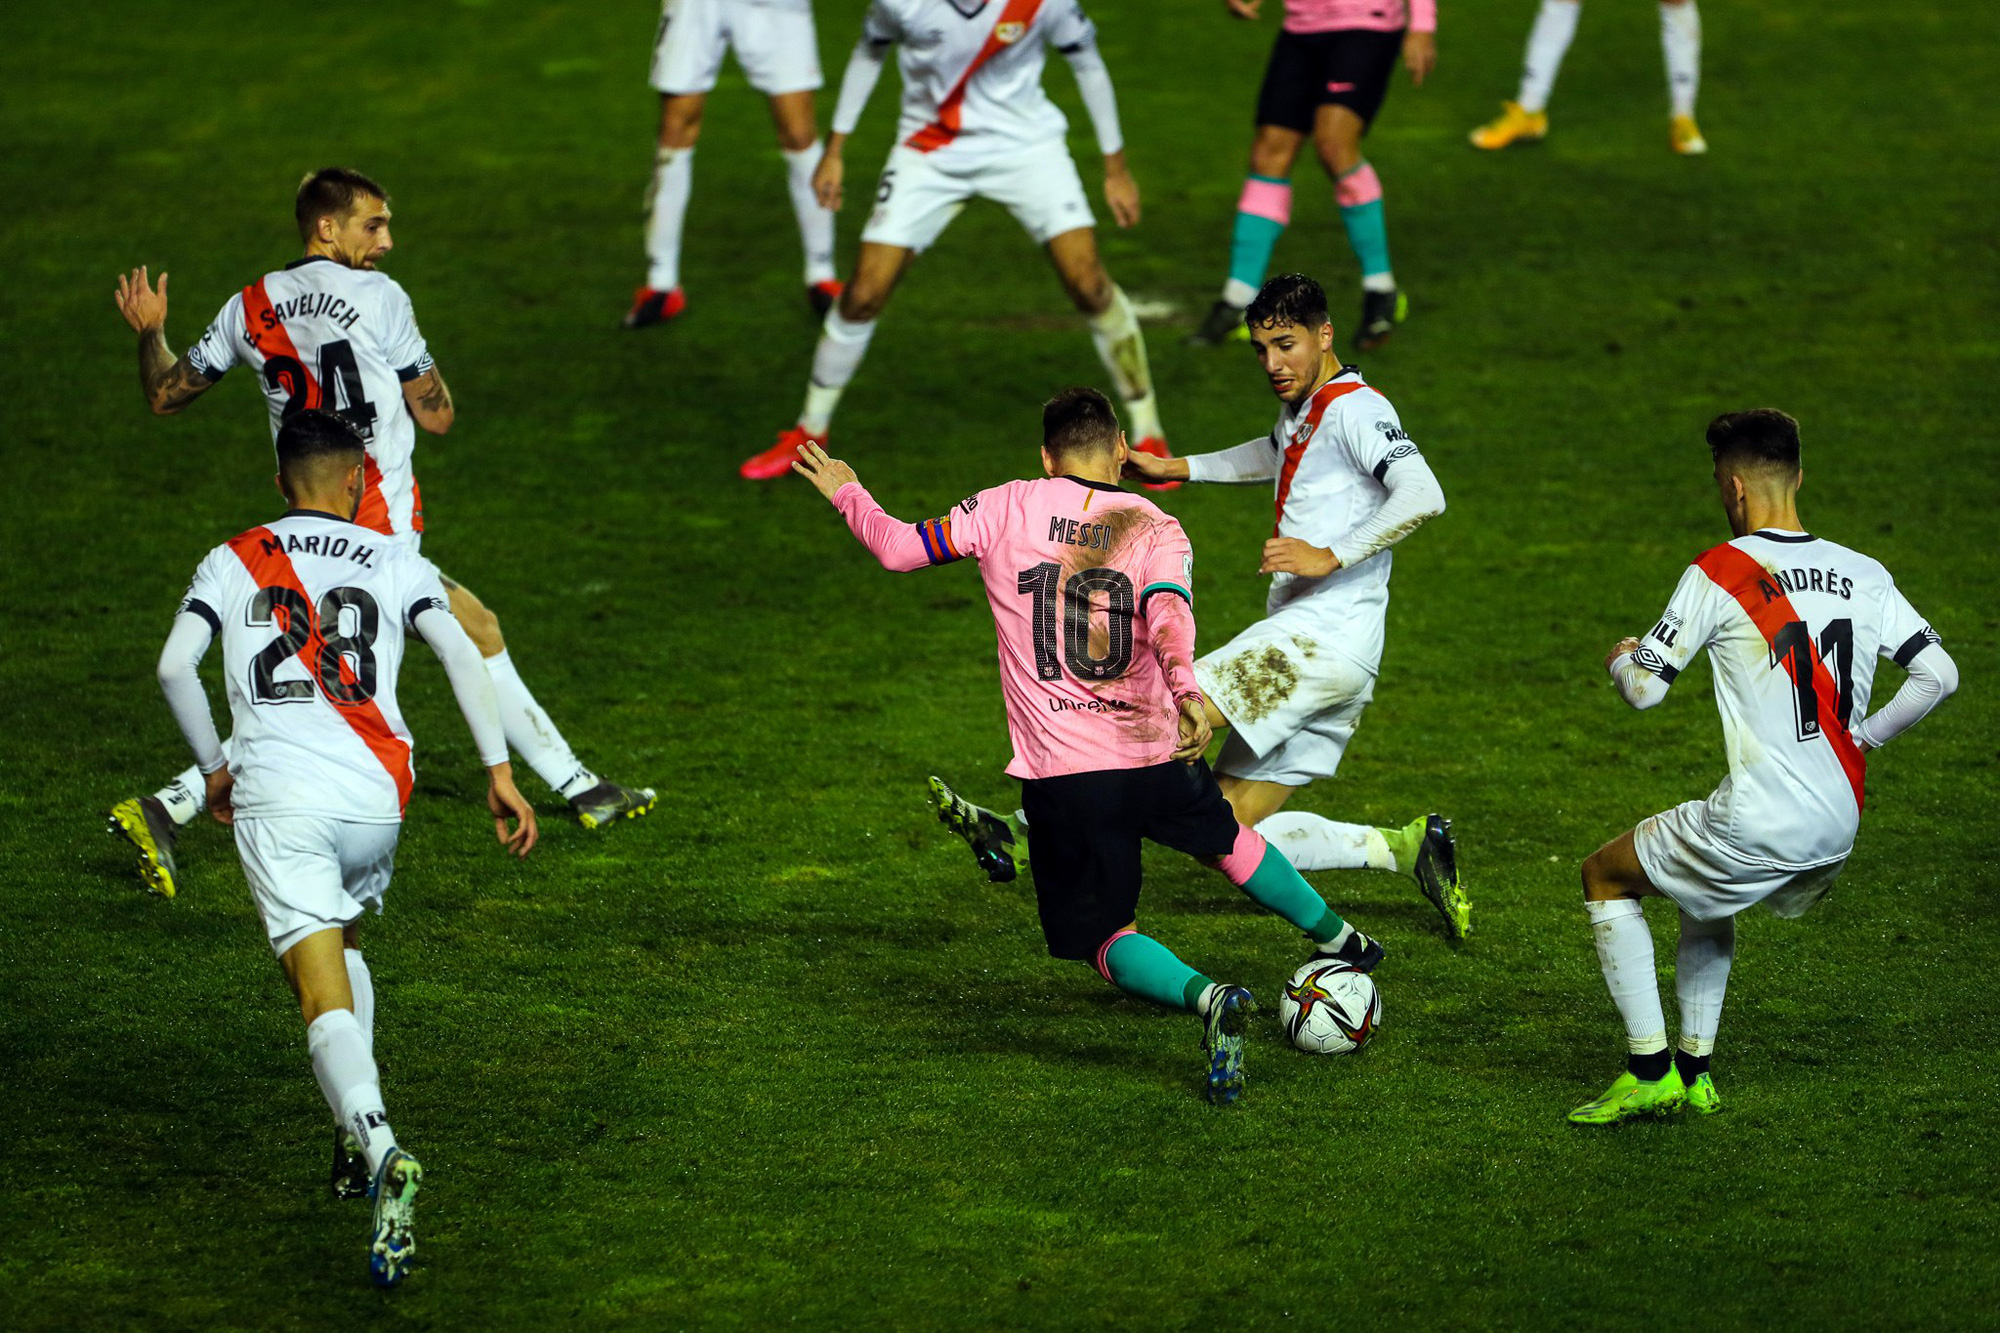 Messi rê bóng qua cả thủ môn nhưng dứt điểm hỏng ăn trước khung thành trống - Ảnh 4.